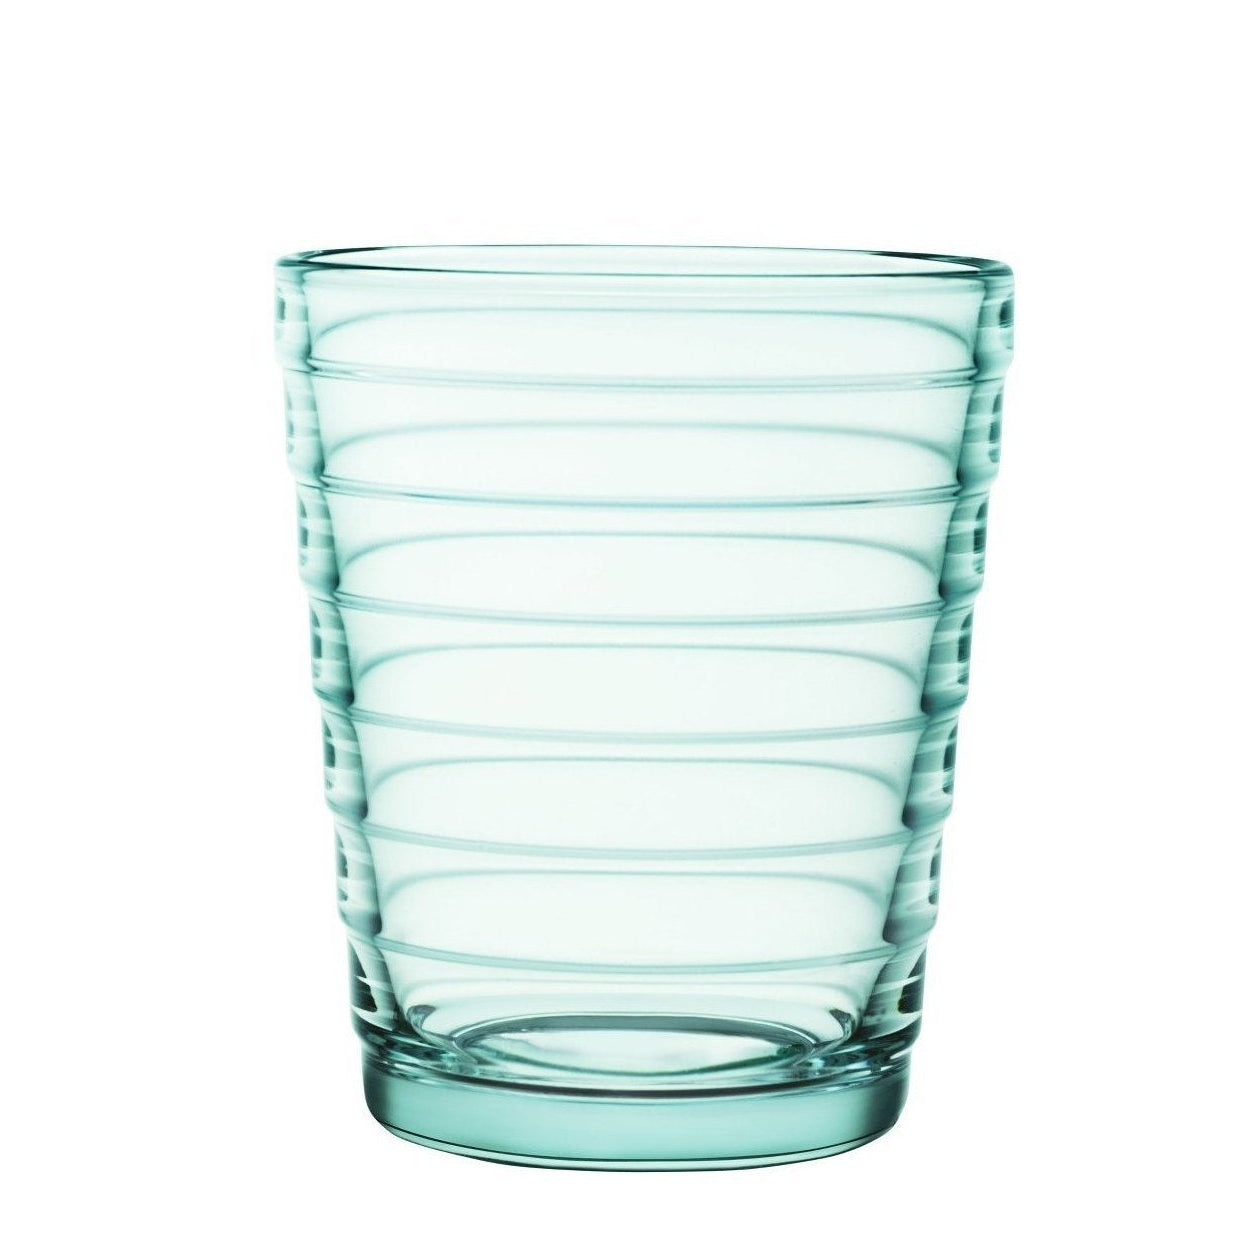 Iittala Aino Aalto Gläser Wassergrün 2Stck, 22cl-Wasserglas-Iittala-6411929510664-1008627-IIT-inwohn